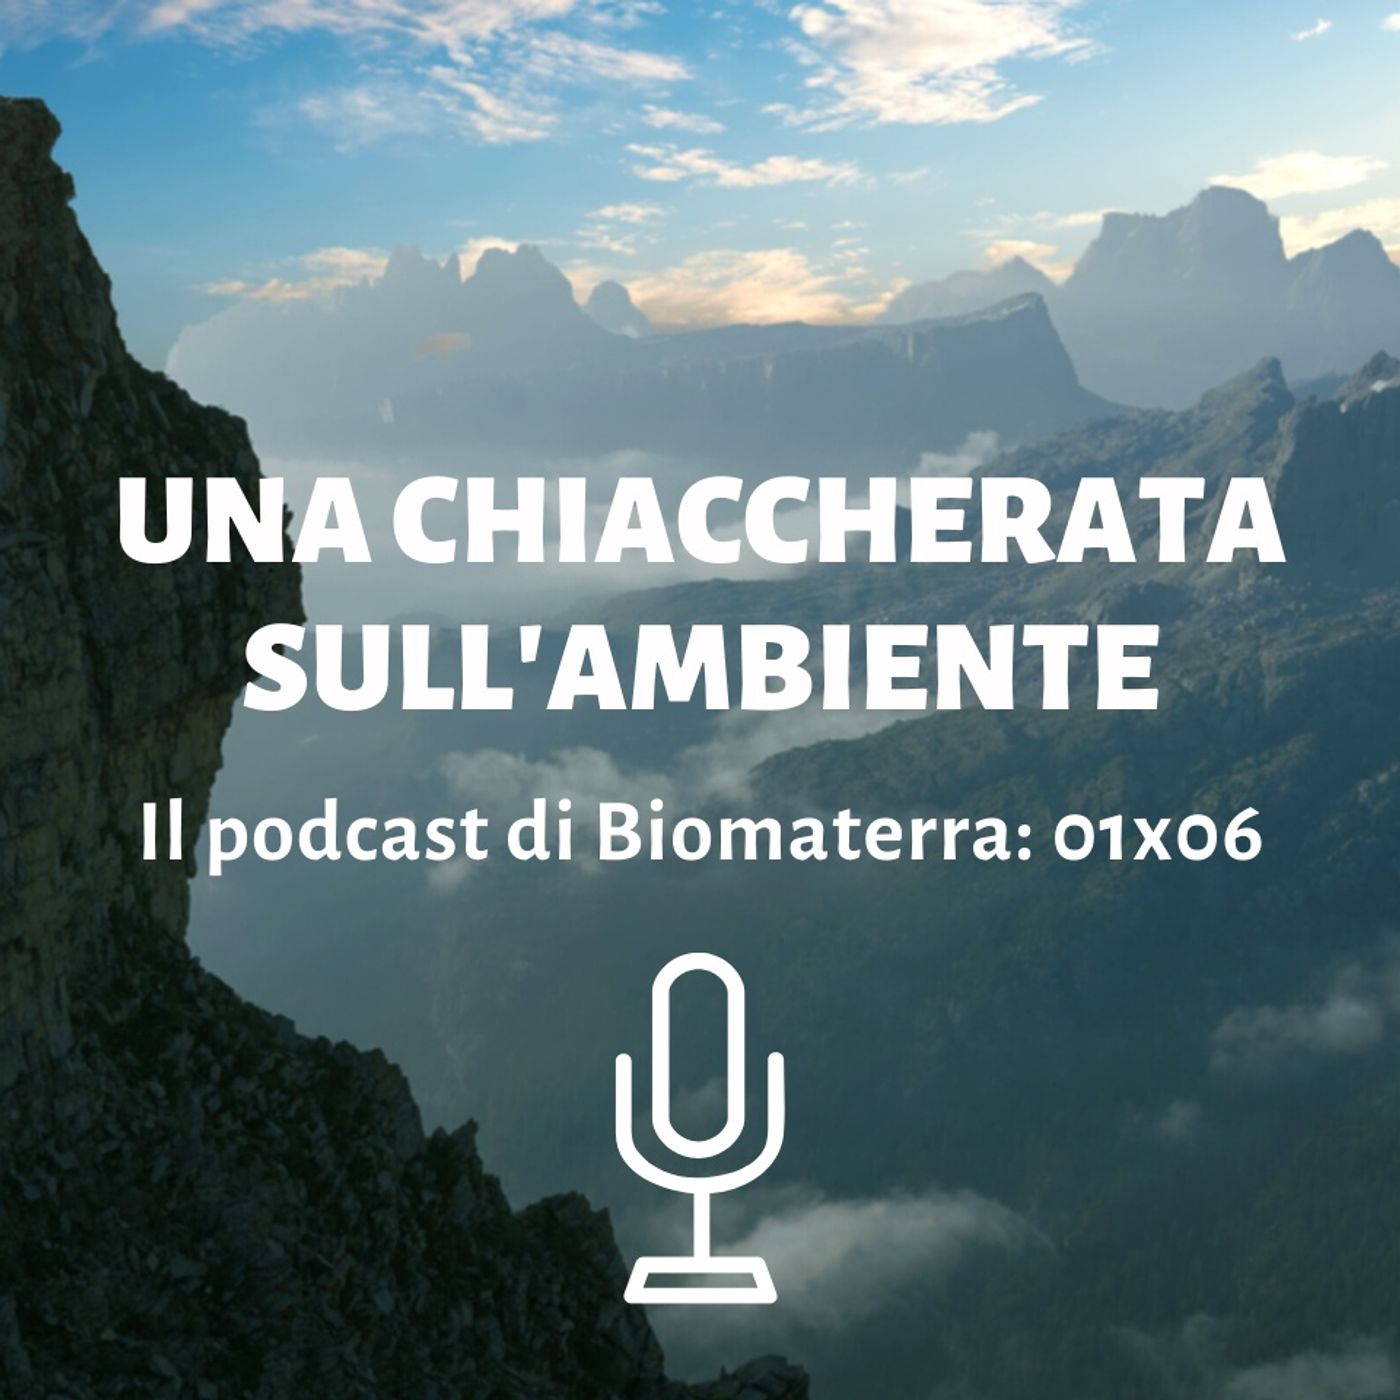 Biomaterra: podcast 1x06 - Una chiaccherata sull'ambiente 🌎